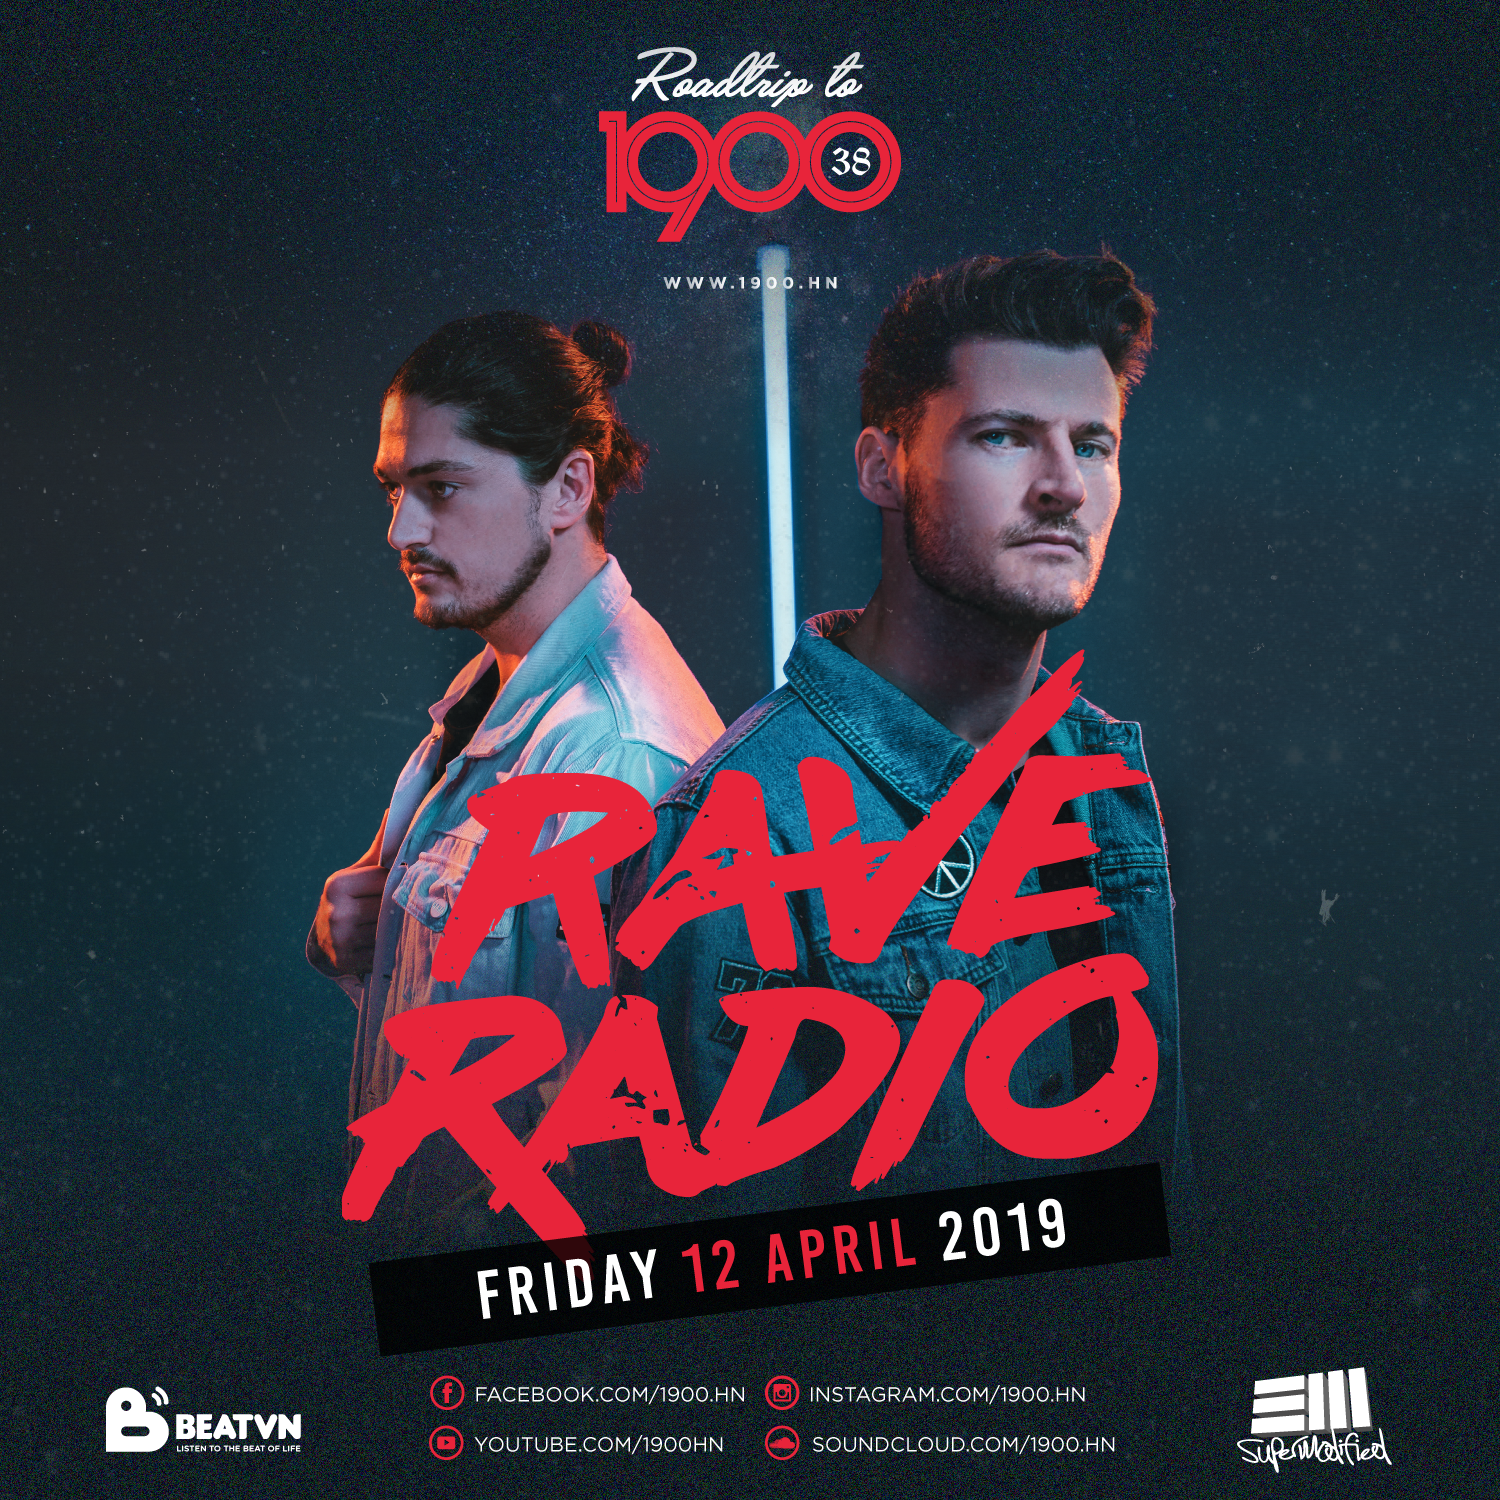 Roadtrip To 1900 #38: Rave Radio | Friday 12.04.2019 [EVENT HANOI]